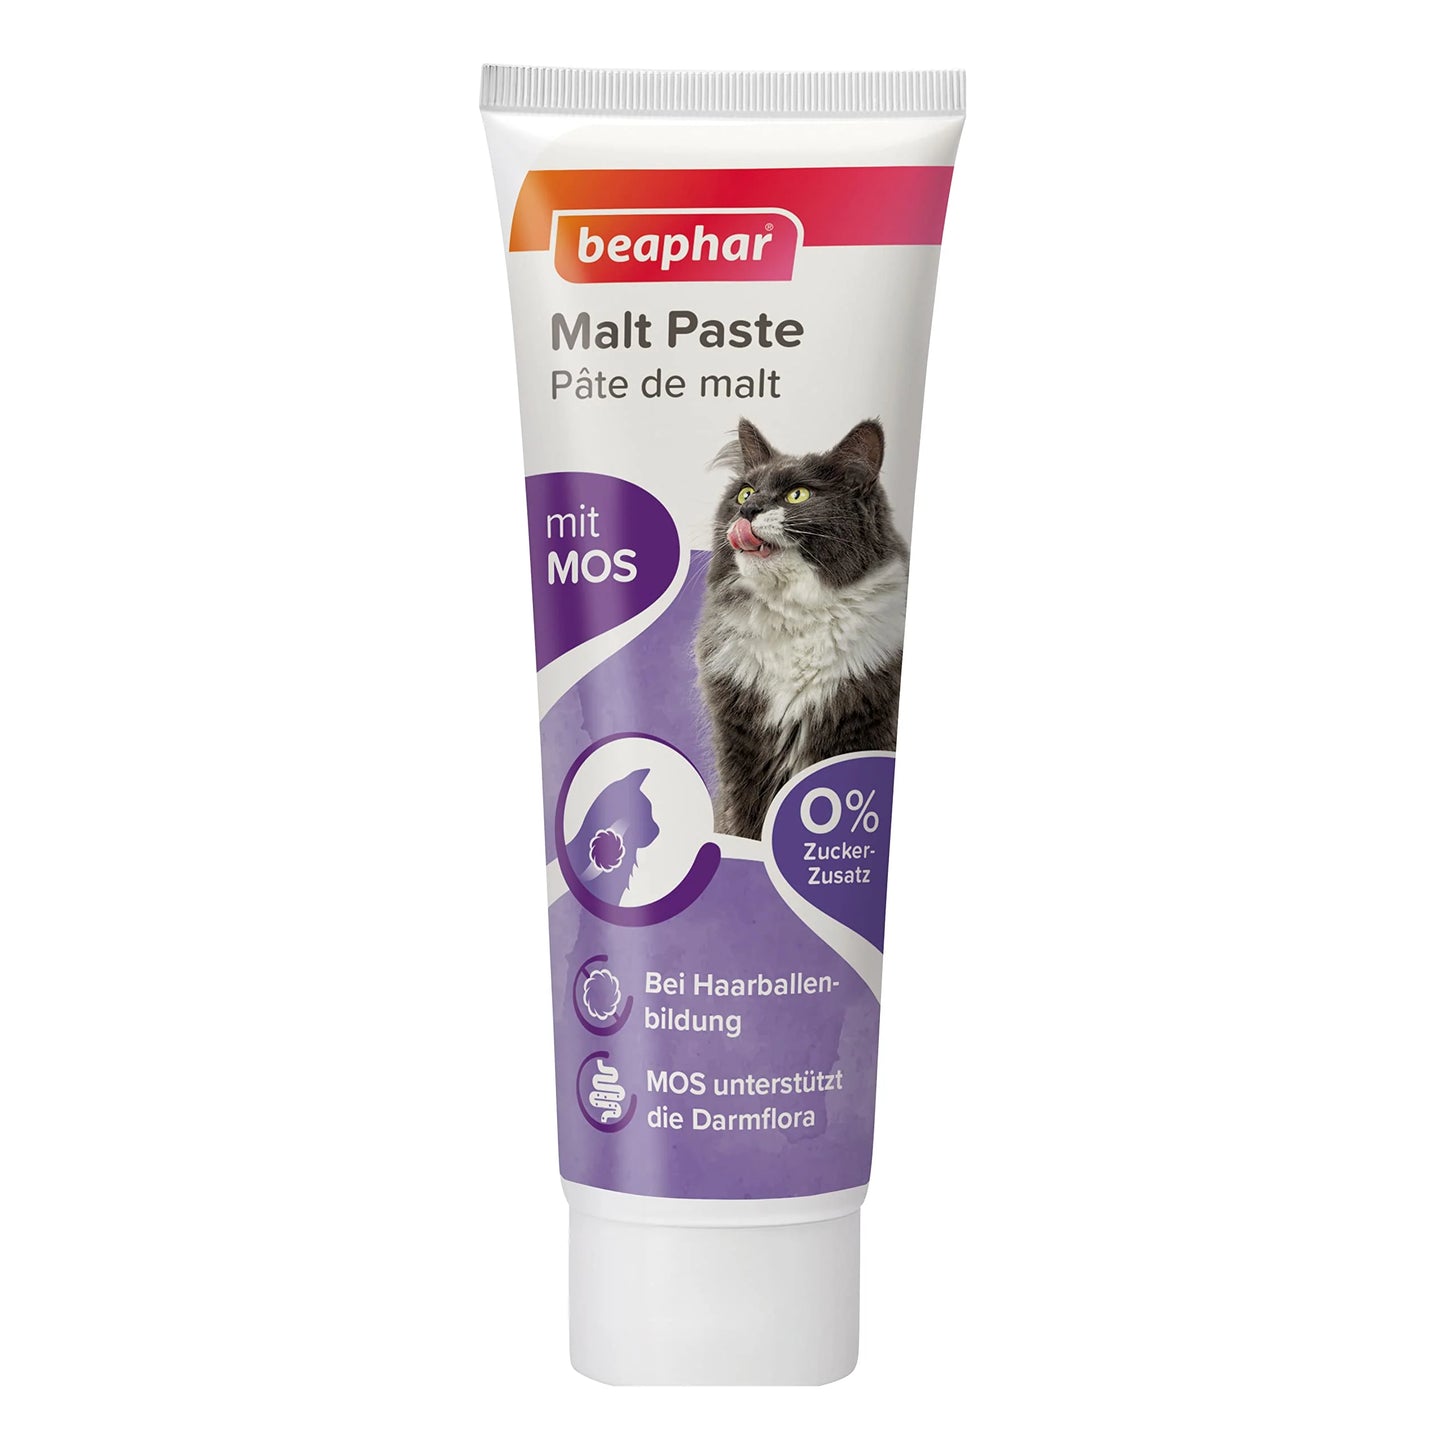 Beaphar Anti-Hairball Malt Paste For Cat 100g